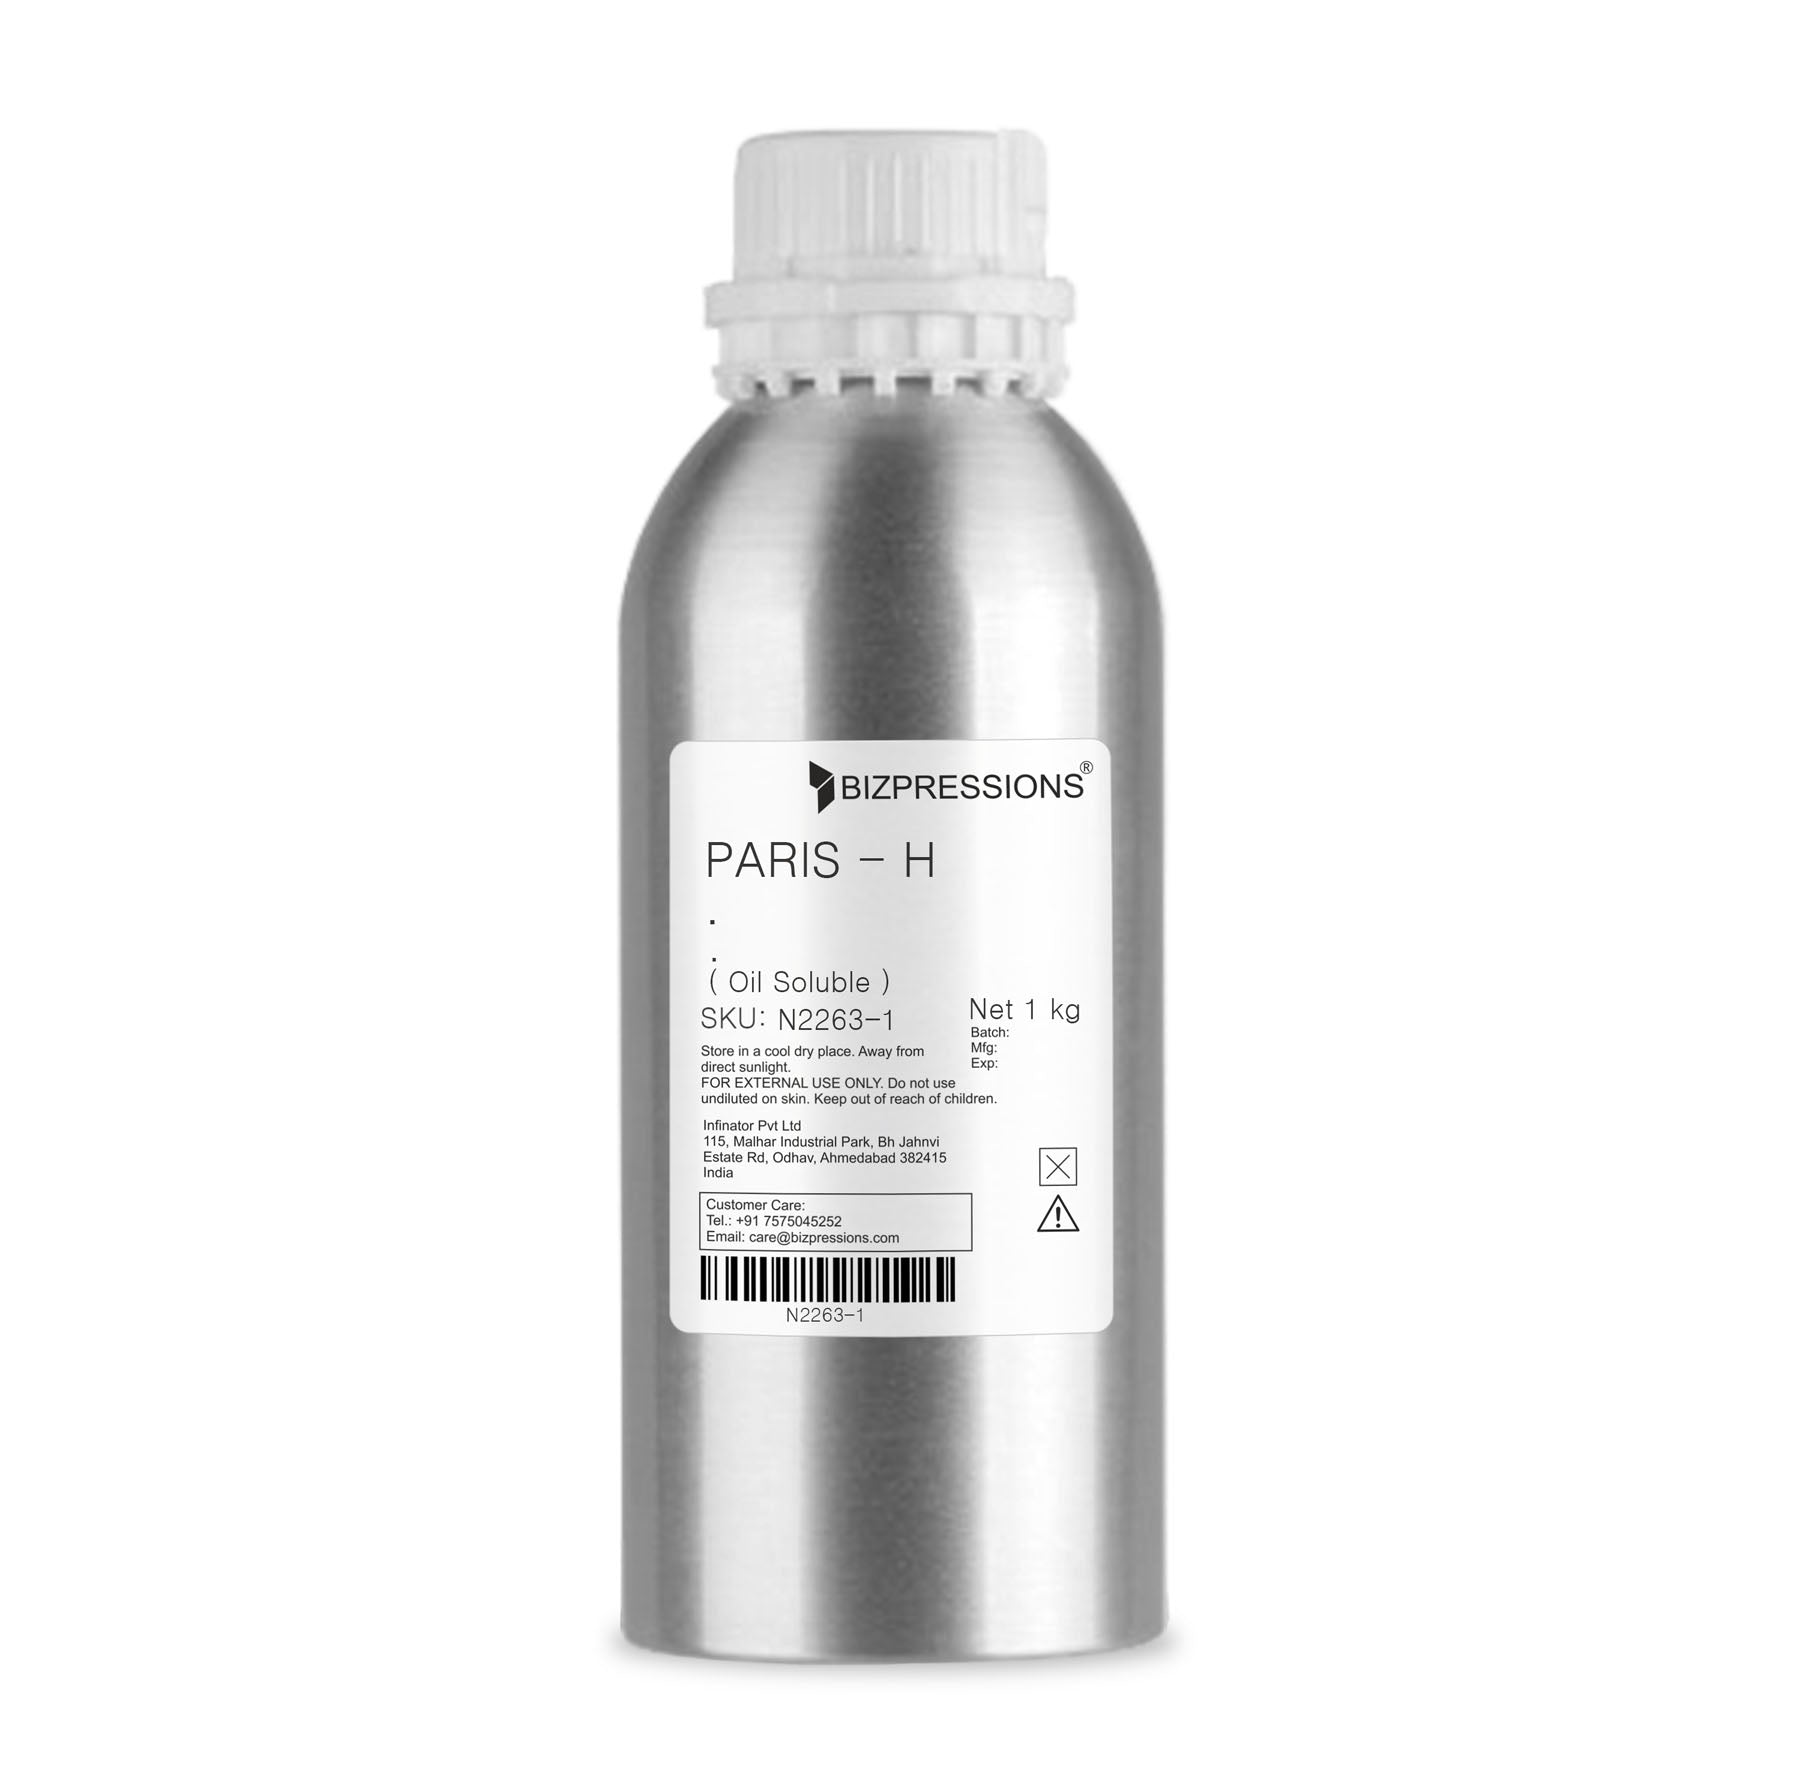 PARIS - H - Fragrance ( Oil Soluble ) - 1 kg